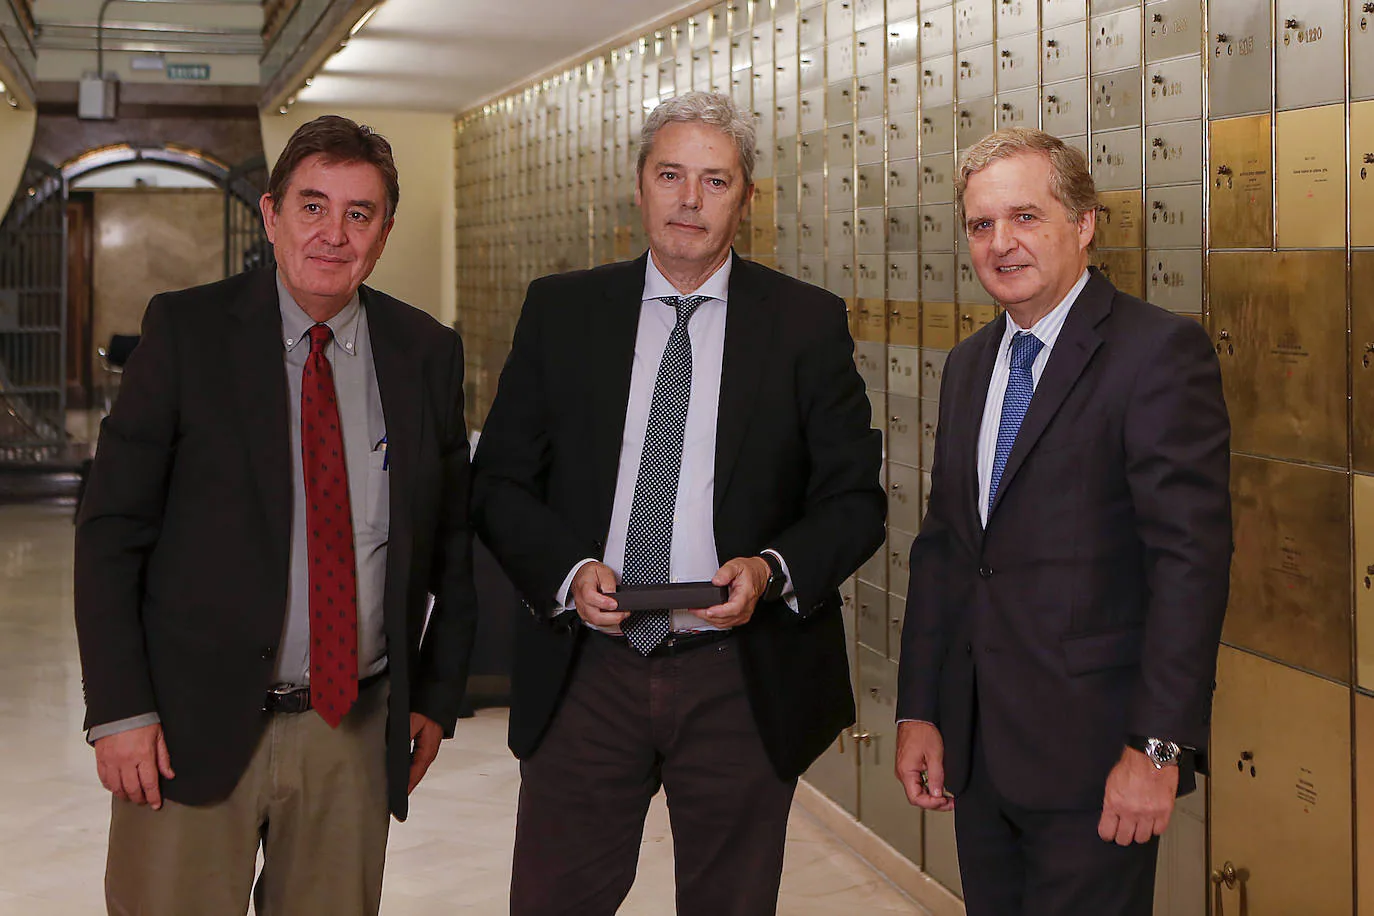 En el centro, Alberto Aguirre de Cárcer, director de La Verdad, entre Luis García Montero, director del Instituto Cervantes e Ignacio Ybarra, presidente de Vocento.